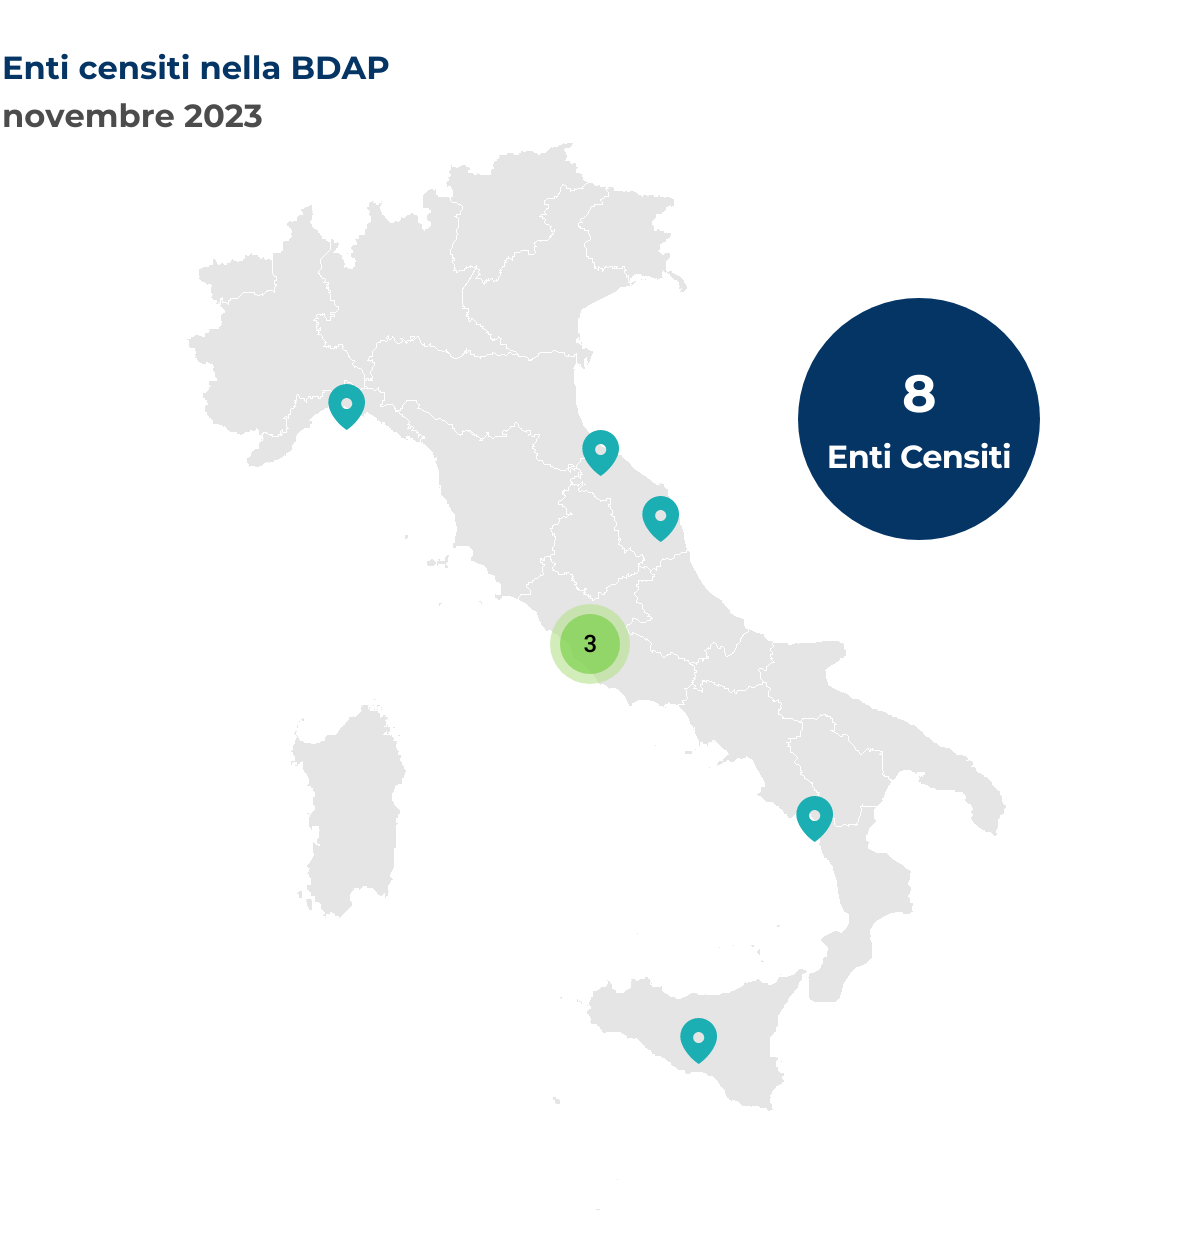 Mappa dell'Italia che mostra la localizzazione degli enti censiti nella BDAP. Nel mese di novembre 2023 sono stati censiti 8 nuovi enti così distribuiti per regione: Basilicata 1 ente, Emilia-Romagna 1 ente, Lazio 3 enti, Liguria 1 ente, Marche 1 ente, Sicilia 1 ente.